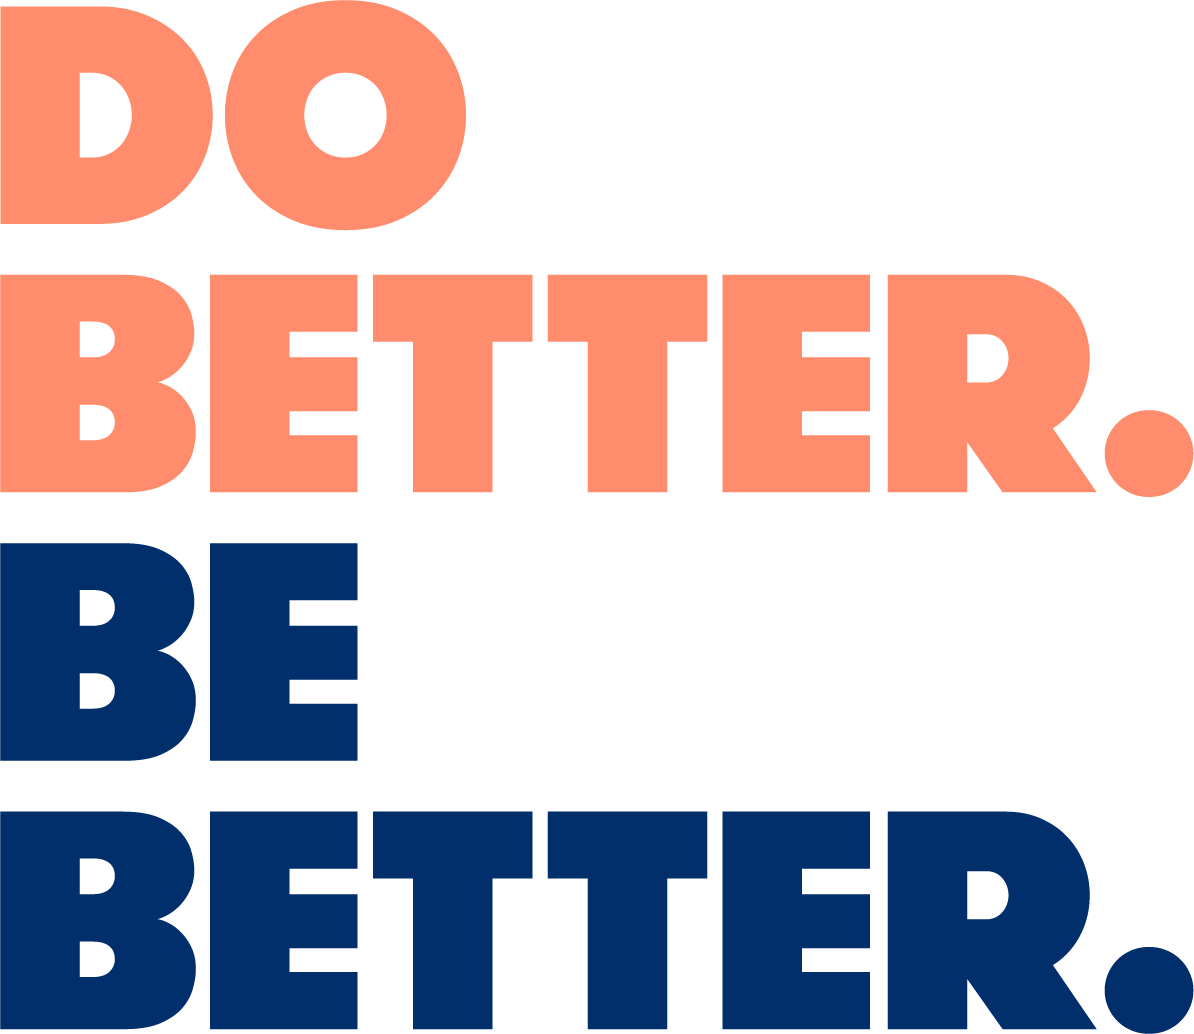 Do Better. Be Better.